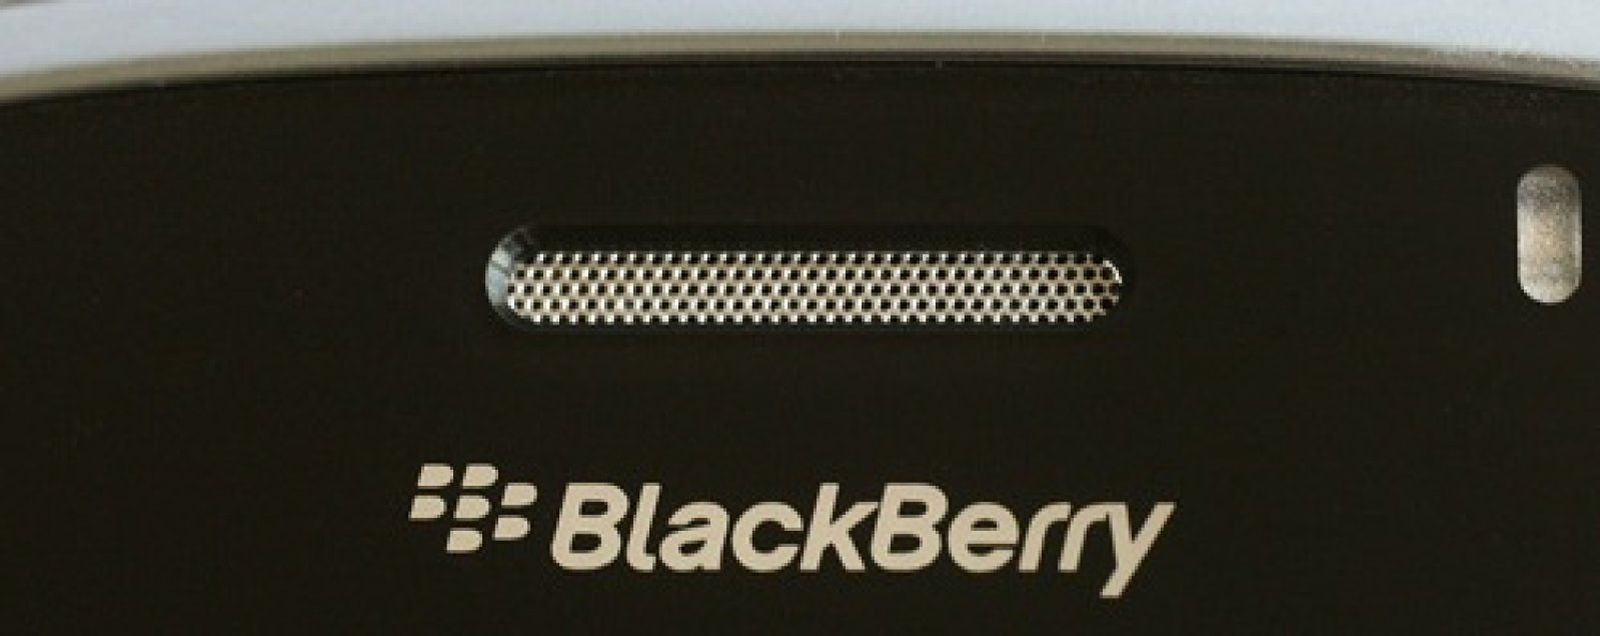 Foto: Blackberry sufre ahora un cuello de botella